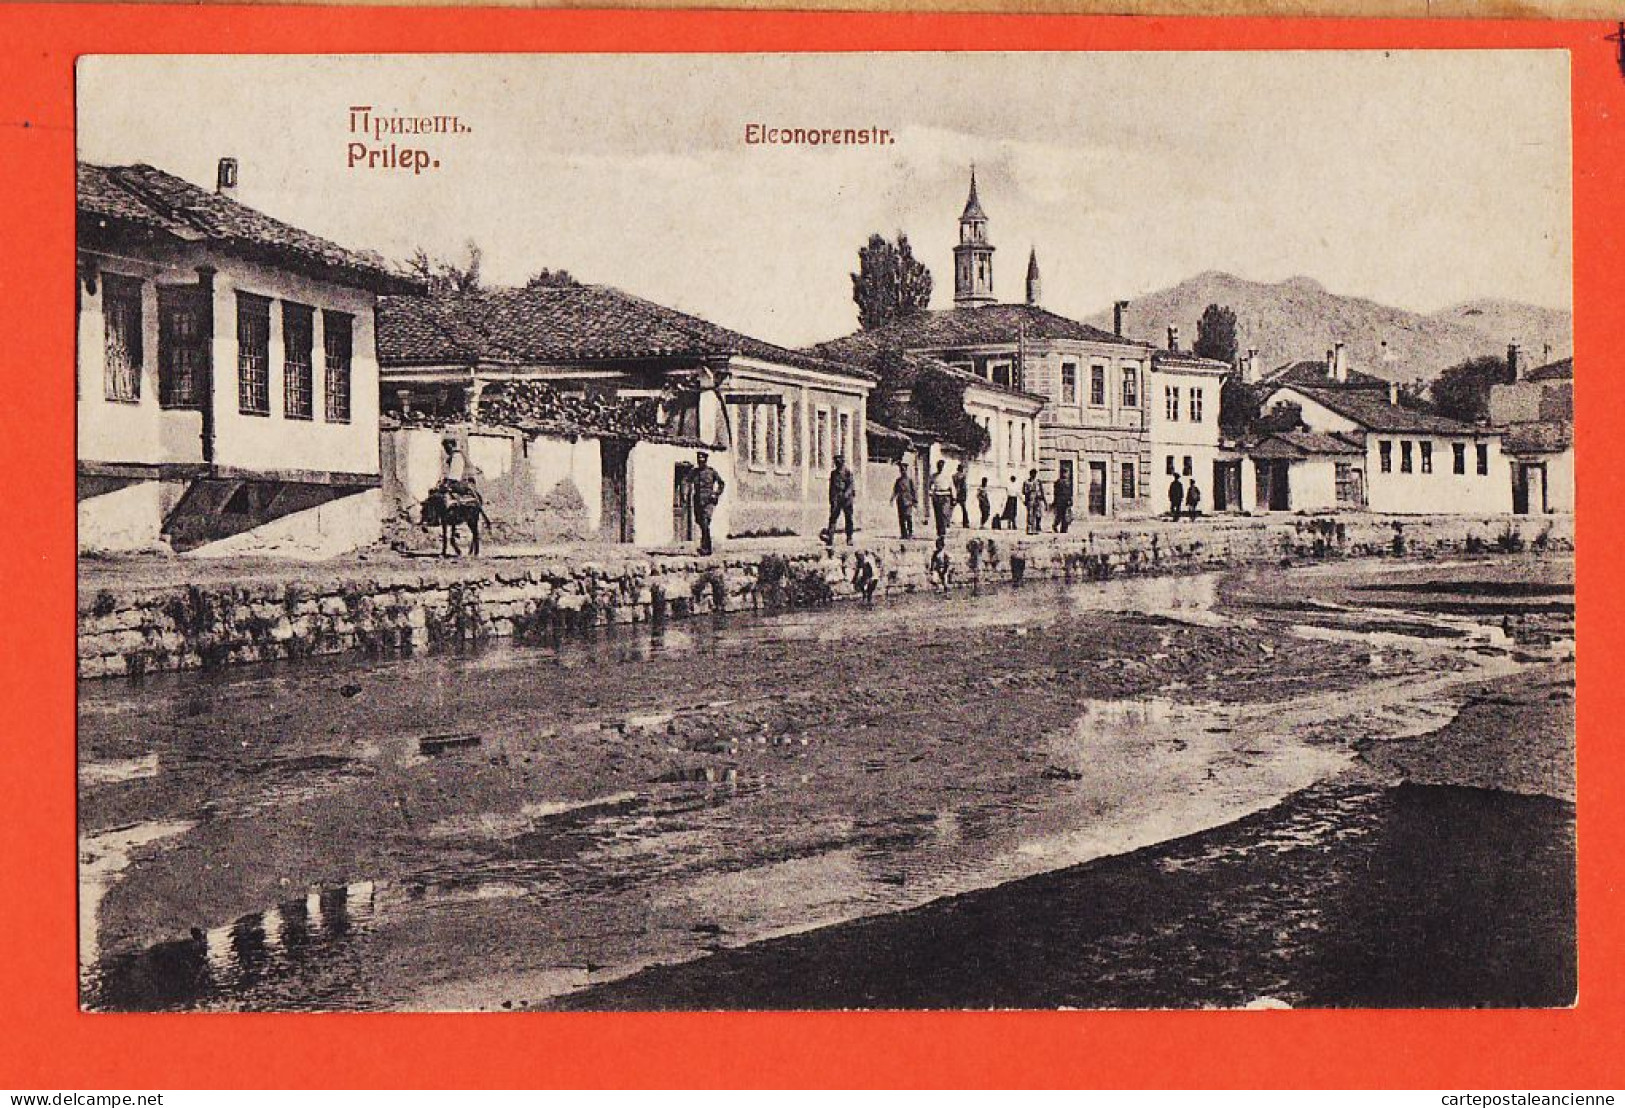 06481 / PRILEP Macedoine Eleonorenstr 1915s KNAPP Halberstadt - North Macedonia